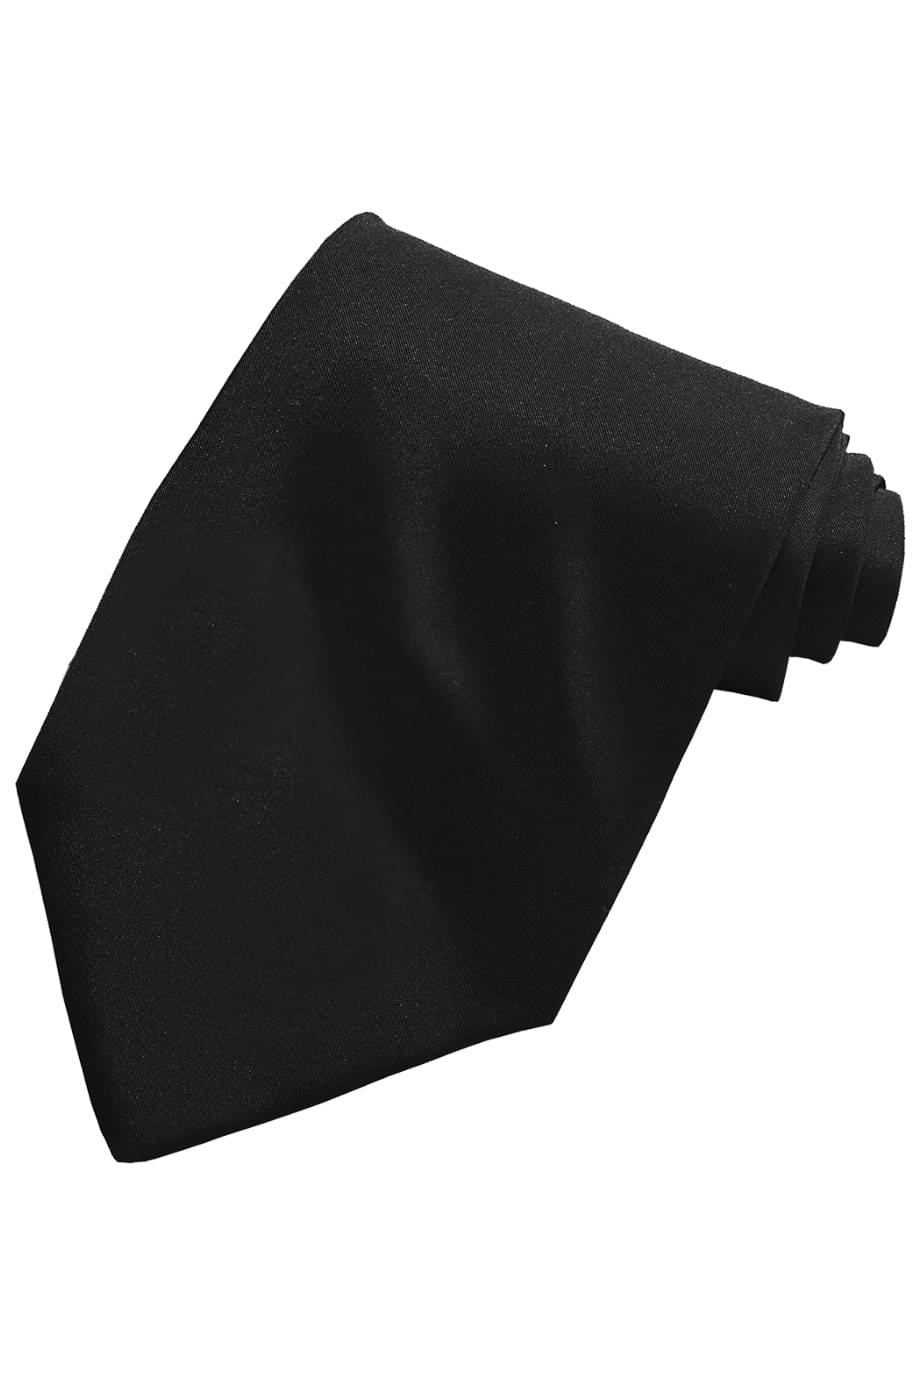 Uniforms - Solid Colour Color Tie, Black